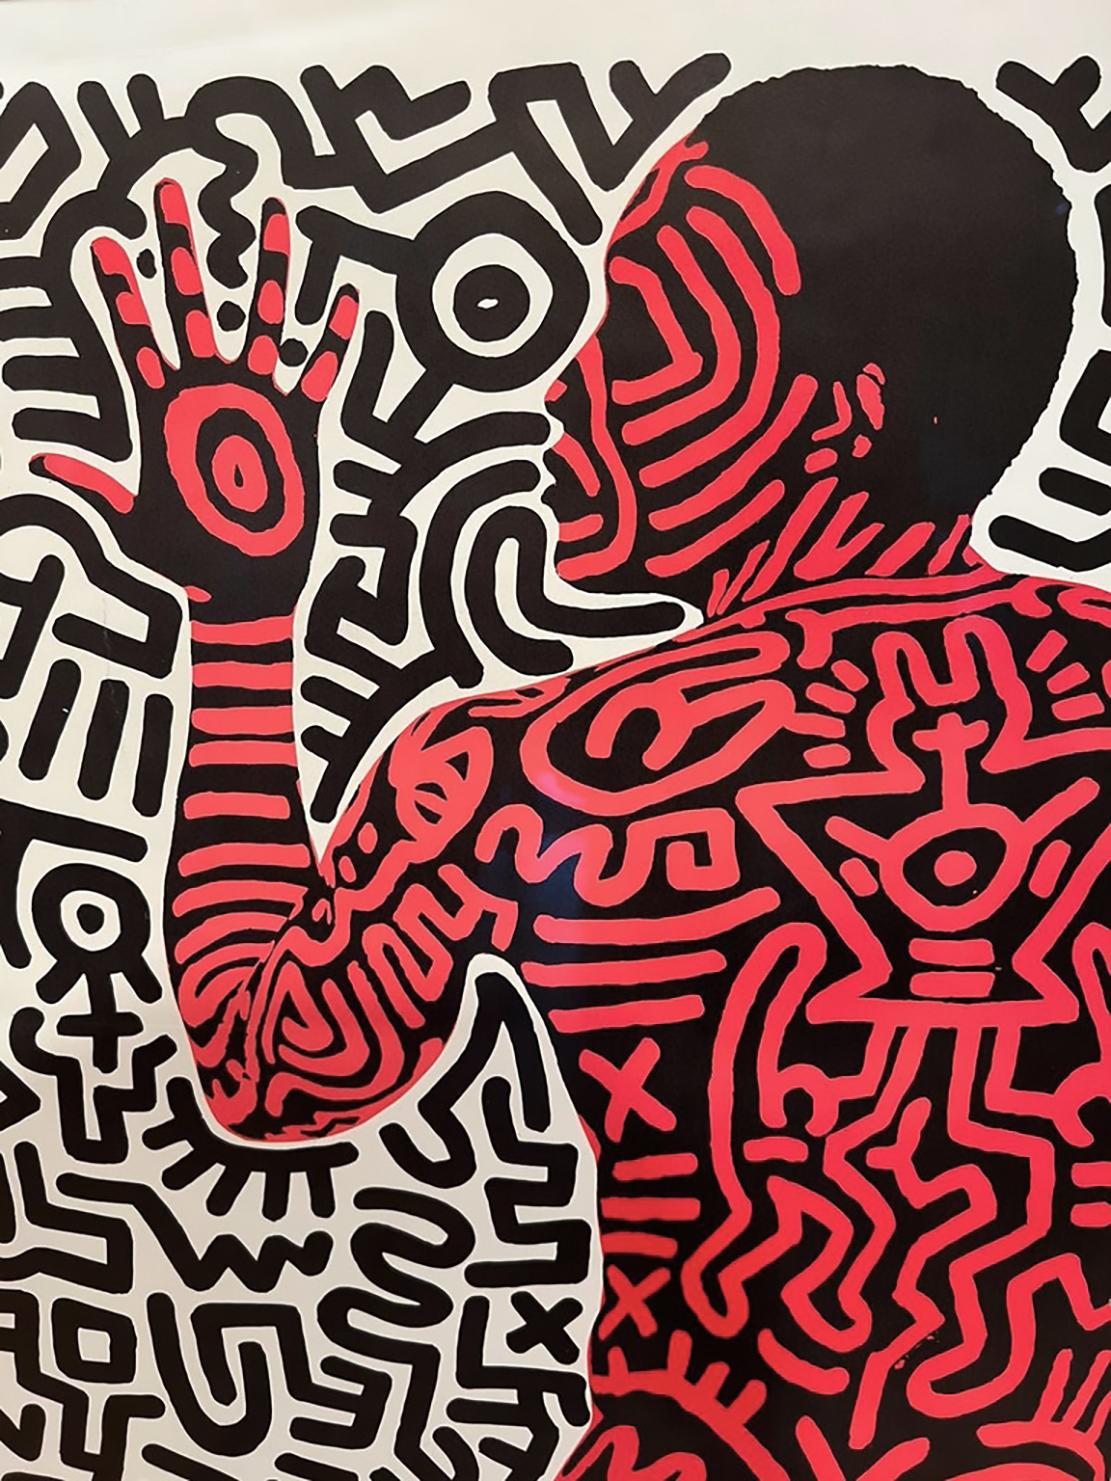 Keith Haring Into 84 Ausstellungsplakat: 
Originalplakat aus den 1980er Jahren, entworfen von Keith Haring für seine gut dokumentierte Ausstellung 